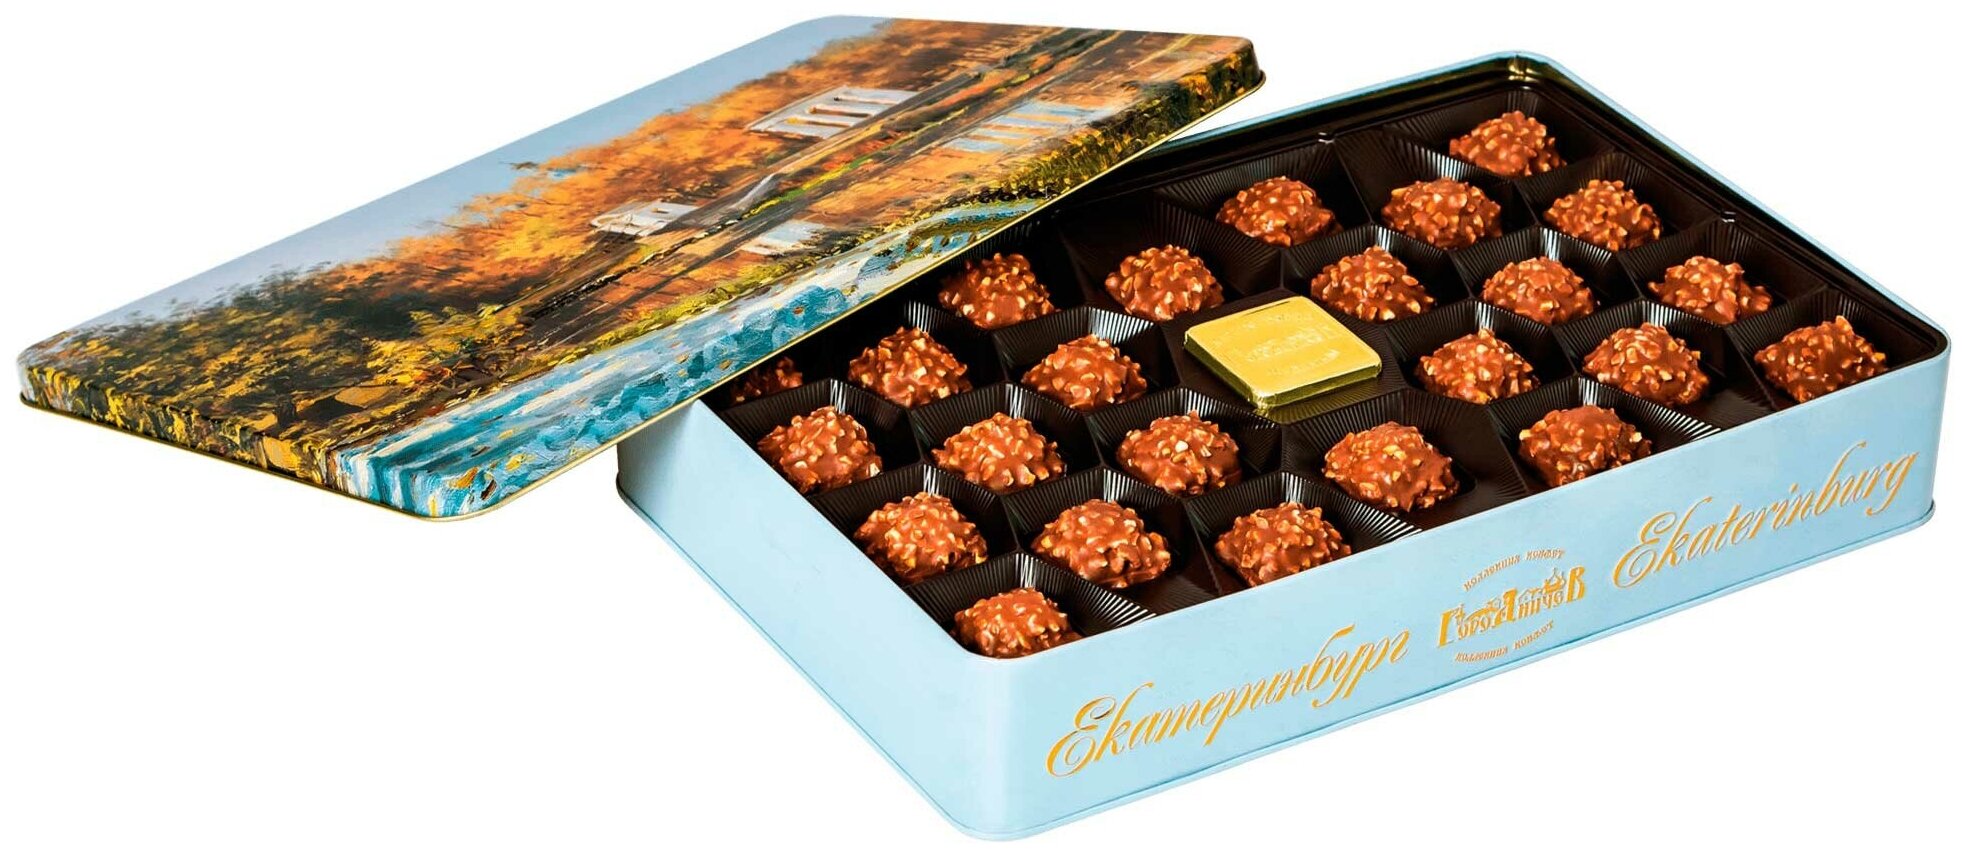 Подарочный набор шоколадных конфет "Благодать" 610 г. (жестяная коробка 340*220*57 мм) подарок - фотография № 2